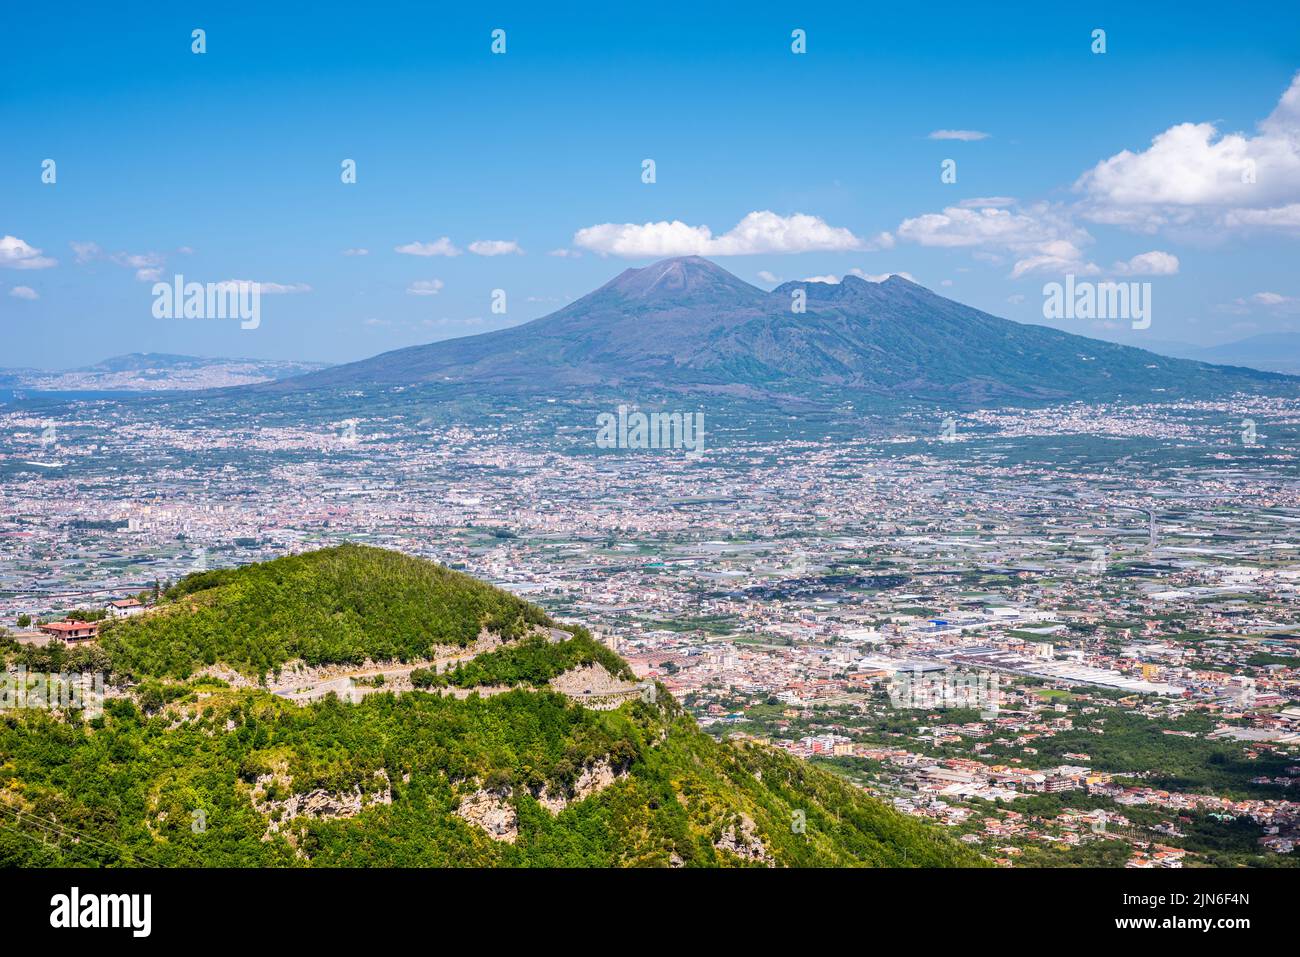 Ampia vista sul lato meridionale del Vesuvio e sull'agglomerato urbano che si estende verso i Monti Lattari. Foto Stock